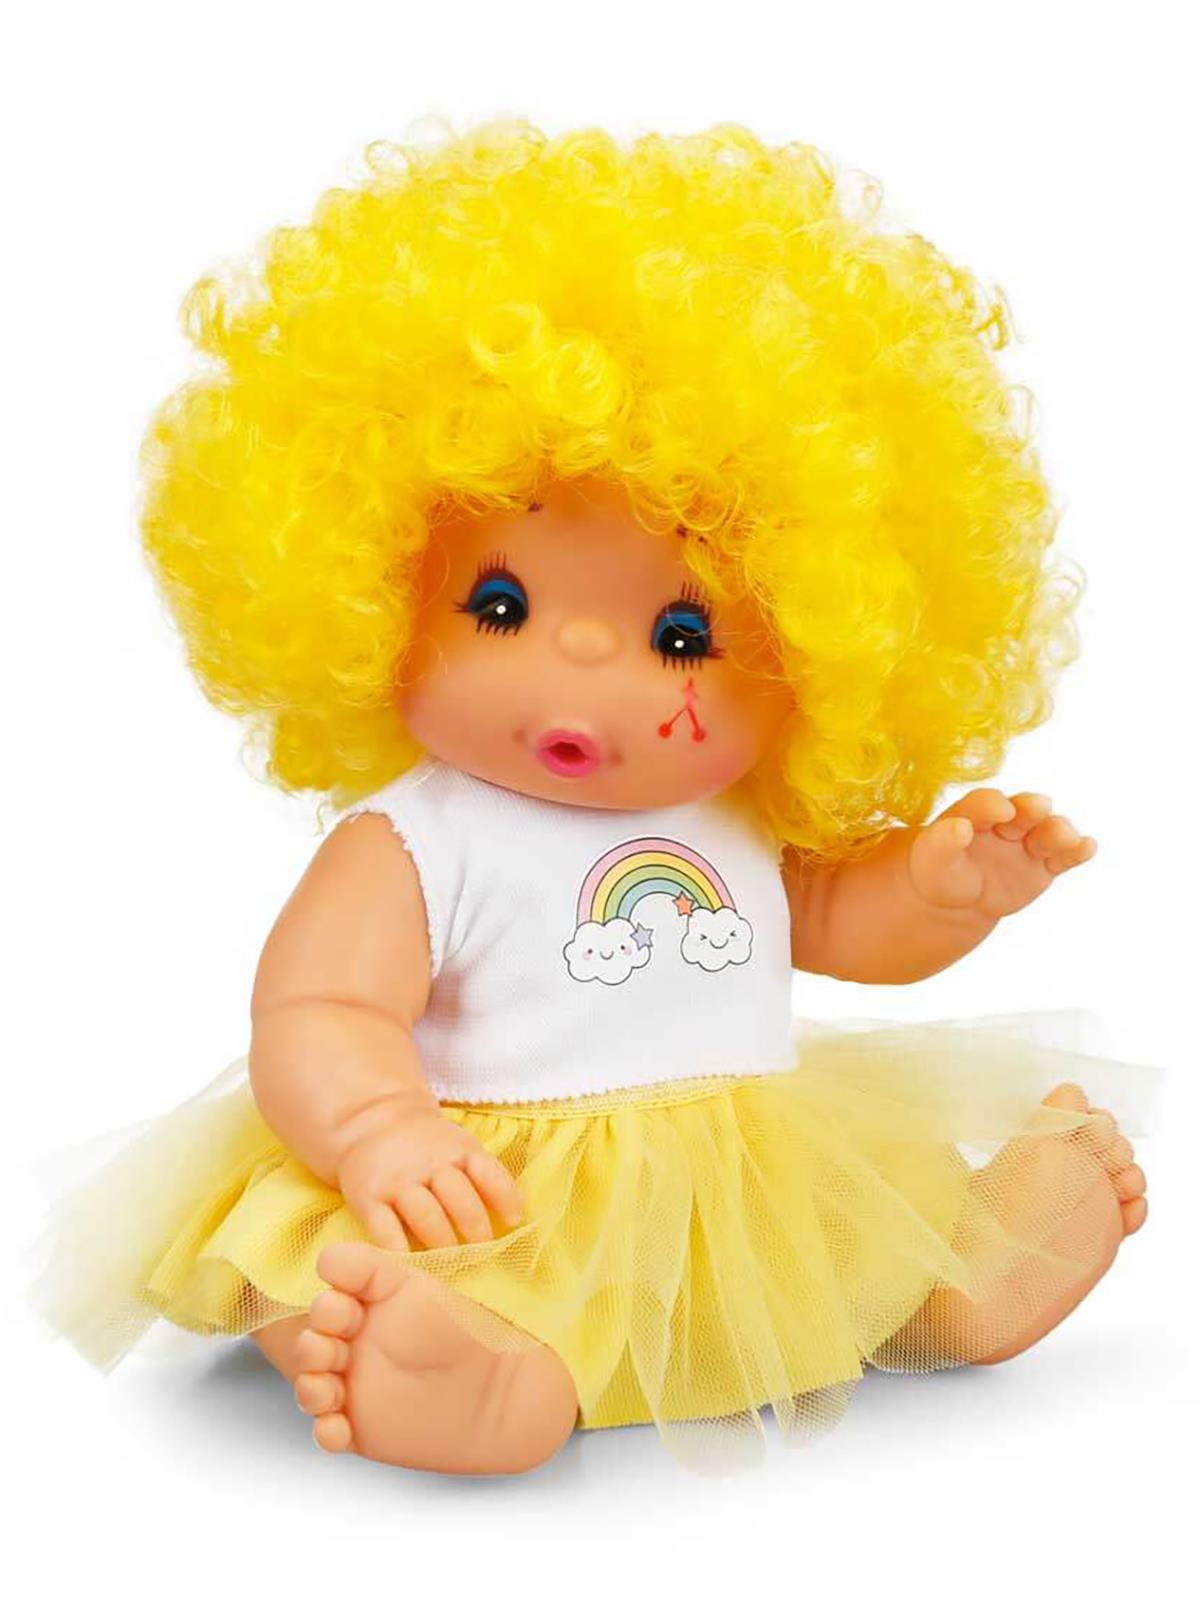 Sunman Abc Afro Kıvırcık Saçlı Bebek 23 Cm Sarı